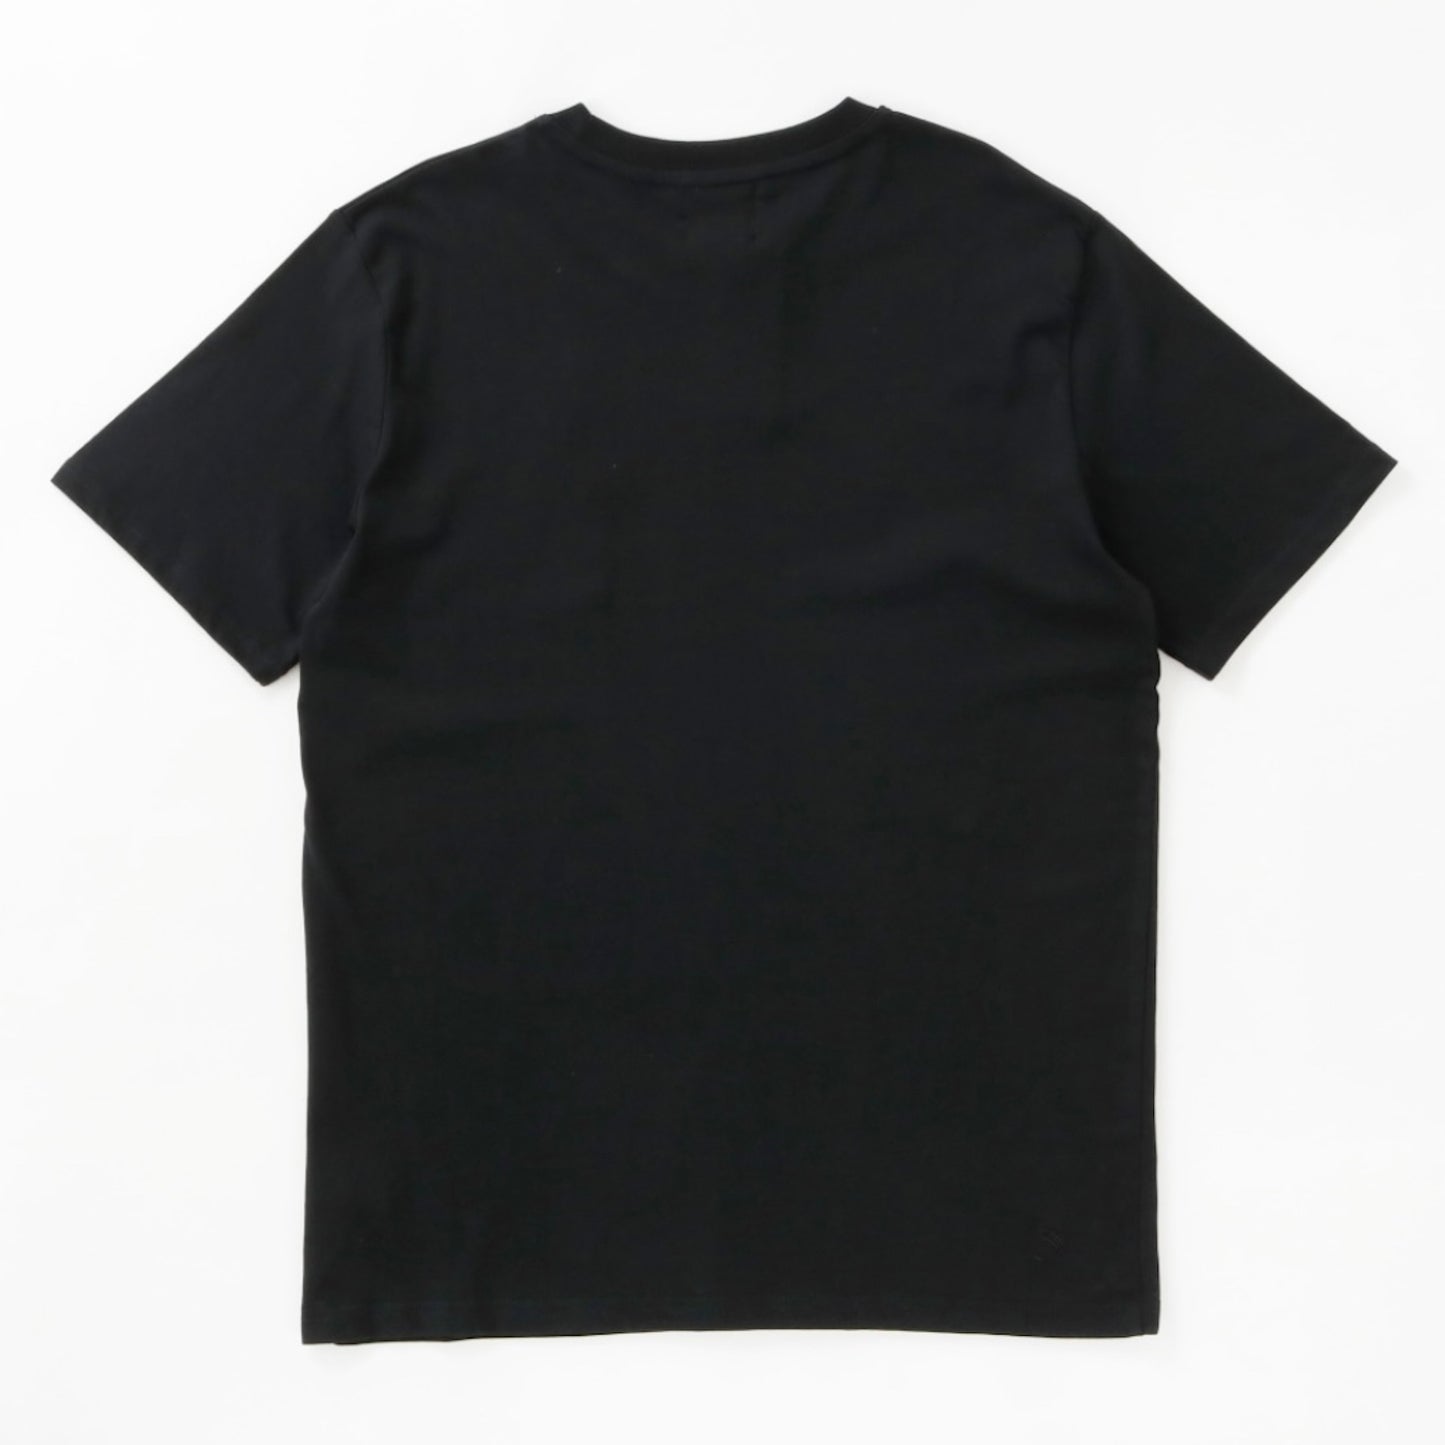 QUATTORDICEE Tシャツ - UNISEX - ブラック